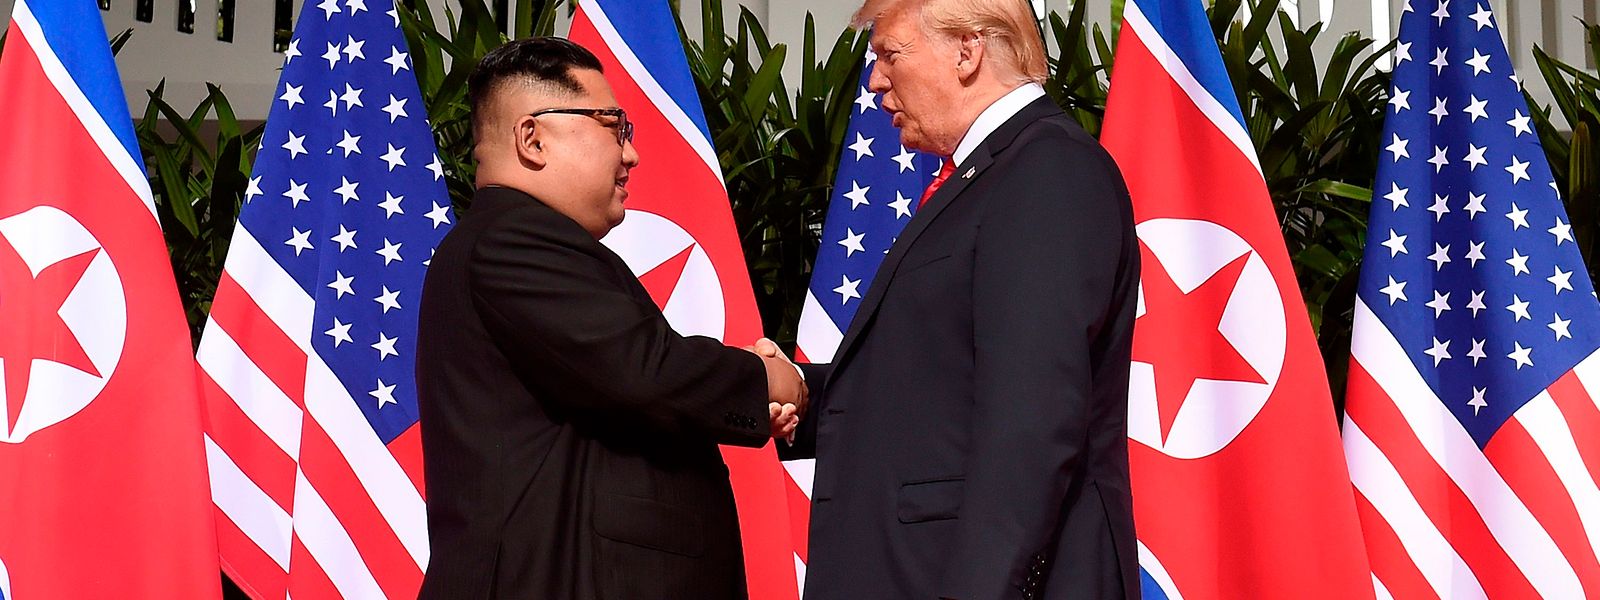 Kim Jong Un und Donald Trump begannen ihr Aufeinandertreffen nach dem obligatorischen Hanschlag mit einem etwa vierzigminütigen Vier-Augen-Gespräch. 